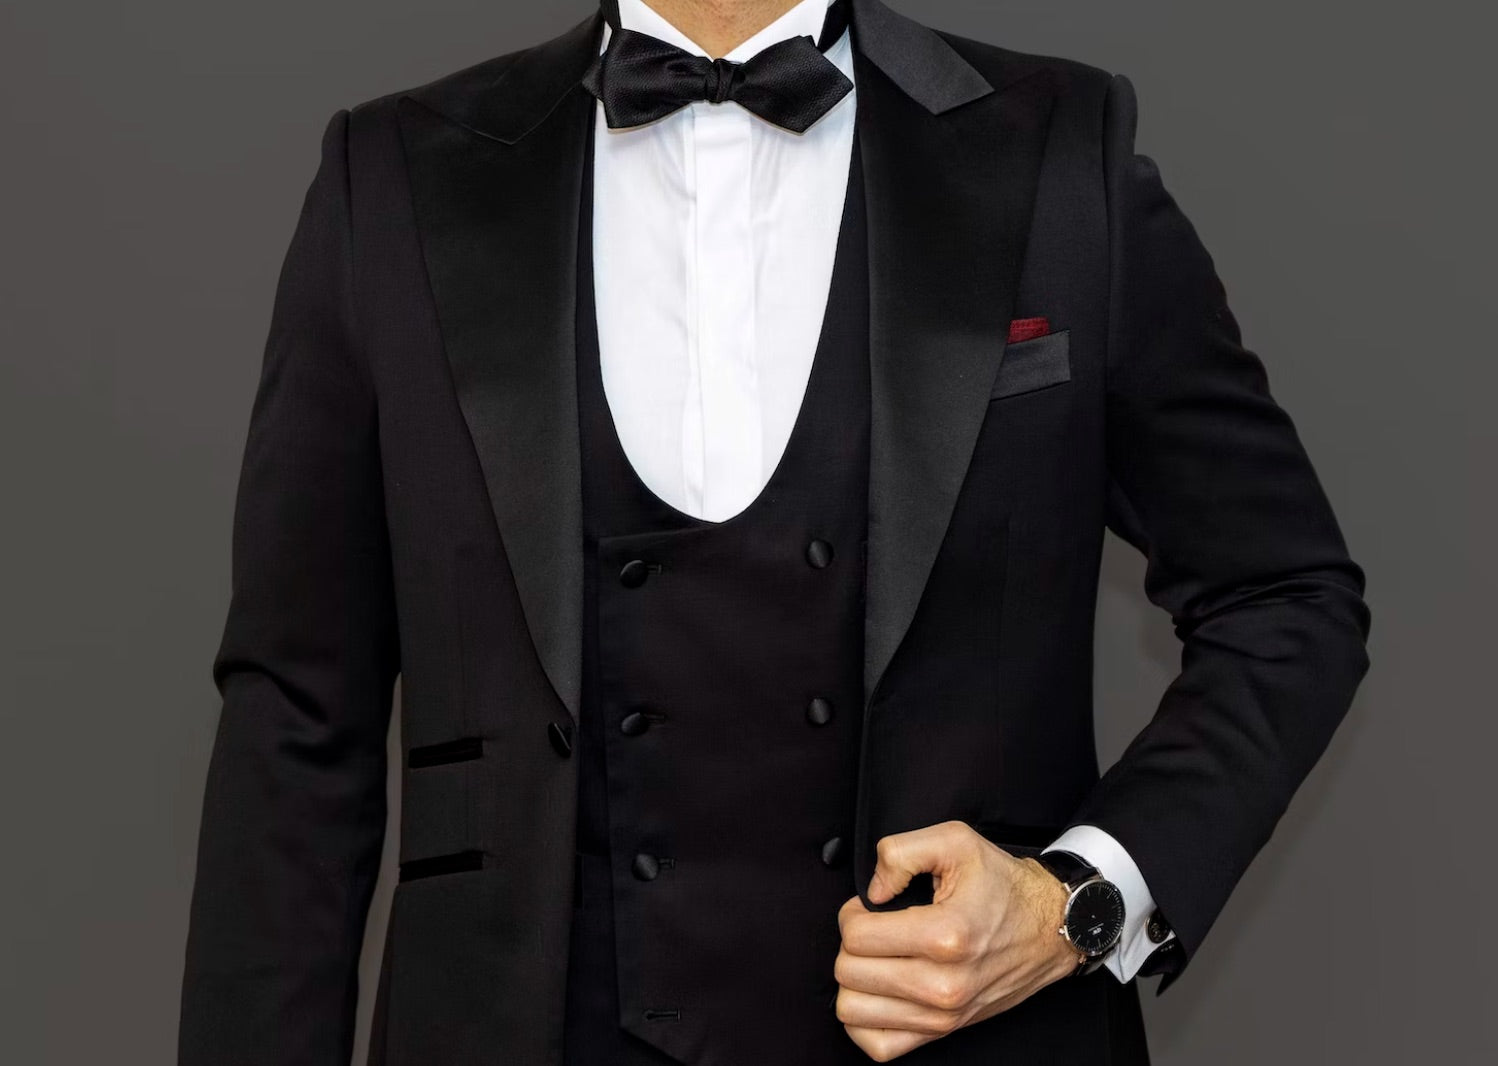 Black Tie Tuxedo Jacket Guide | Black tie dress code, Black tie attire,  Black tie tuxedo